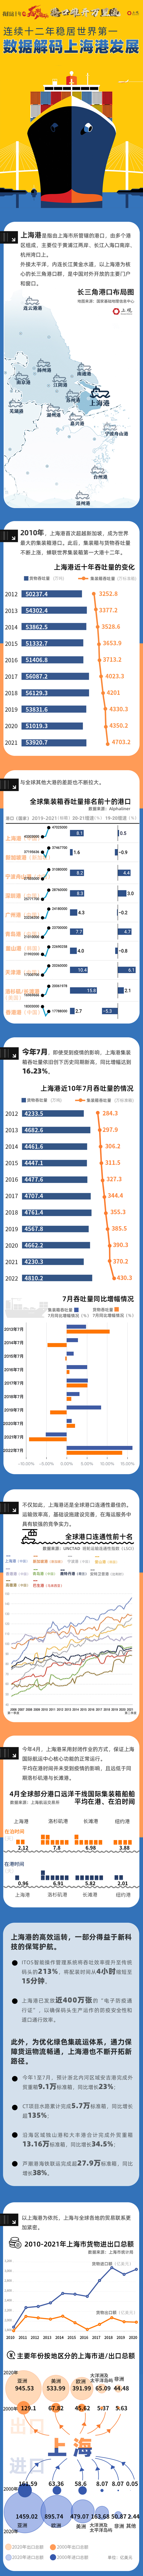 港口雄开万里流|十组数据解码上海港十二年蝉联全球第一的奥秘